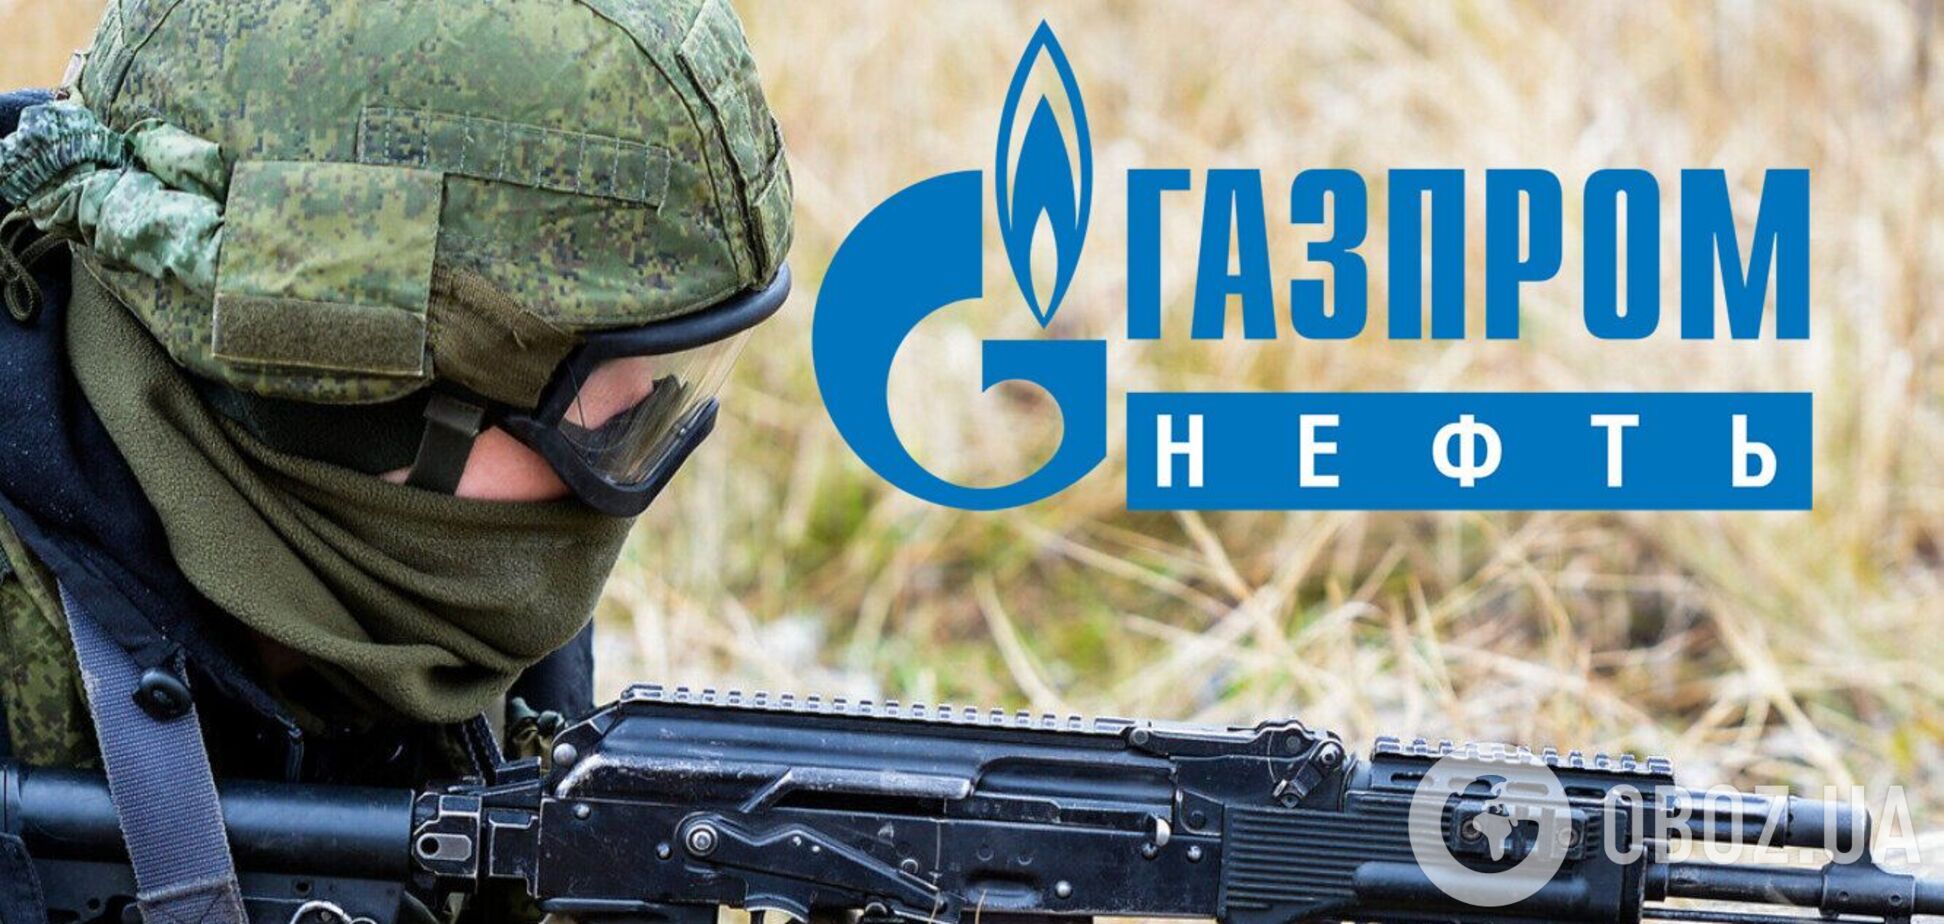 ГУР: 'Газпром' створить власну ПВК, 'гонка озброєнь' всередині РФ набирає обертів 